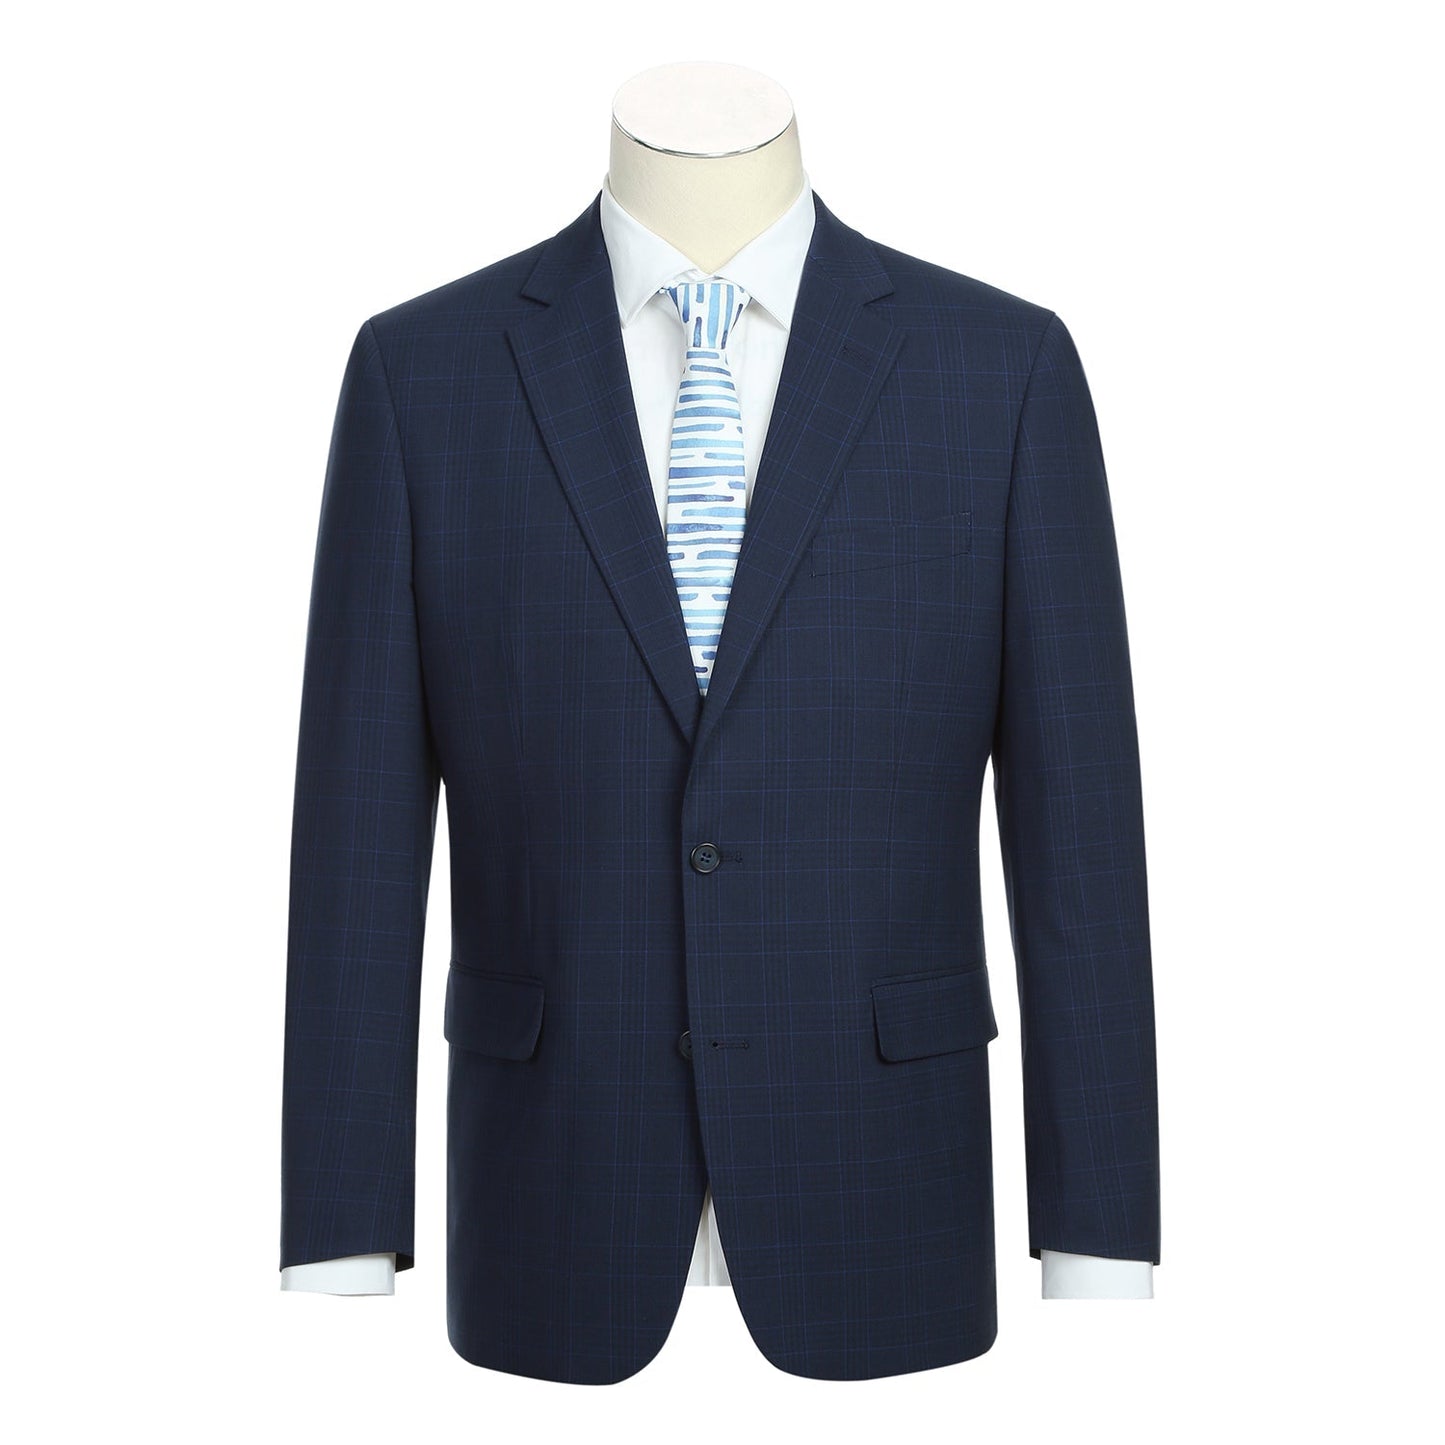 293-26 Men's Classic Fit Blue Plaid Suit